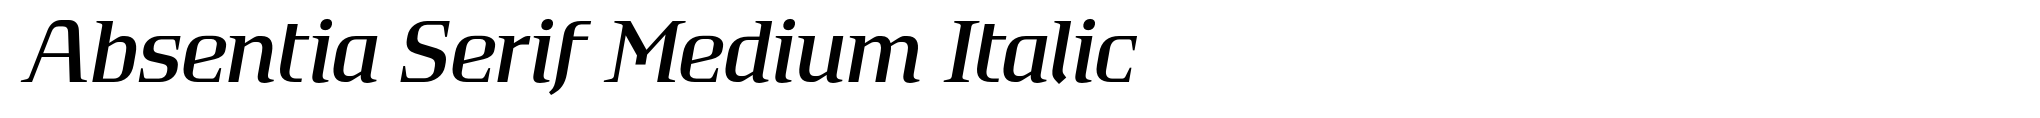 Absentia Serif Medium Italic image